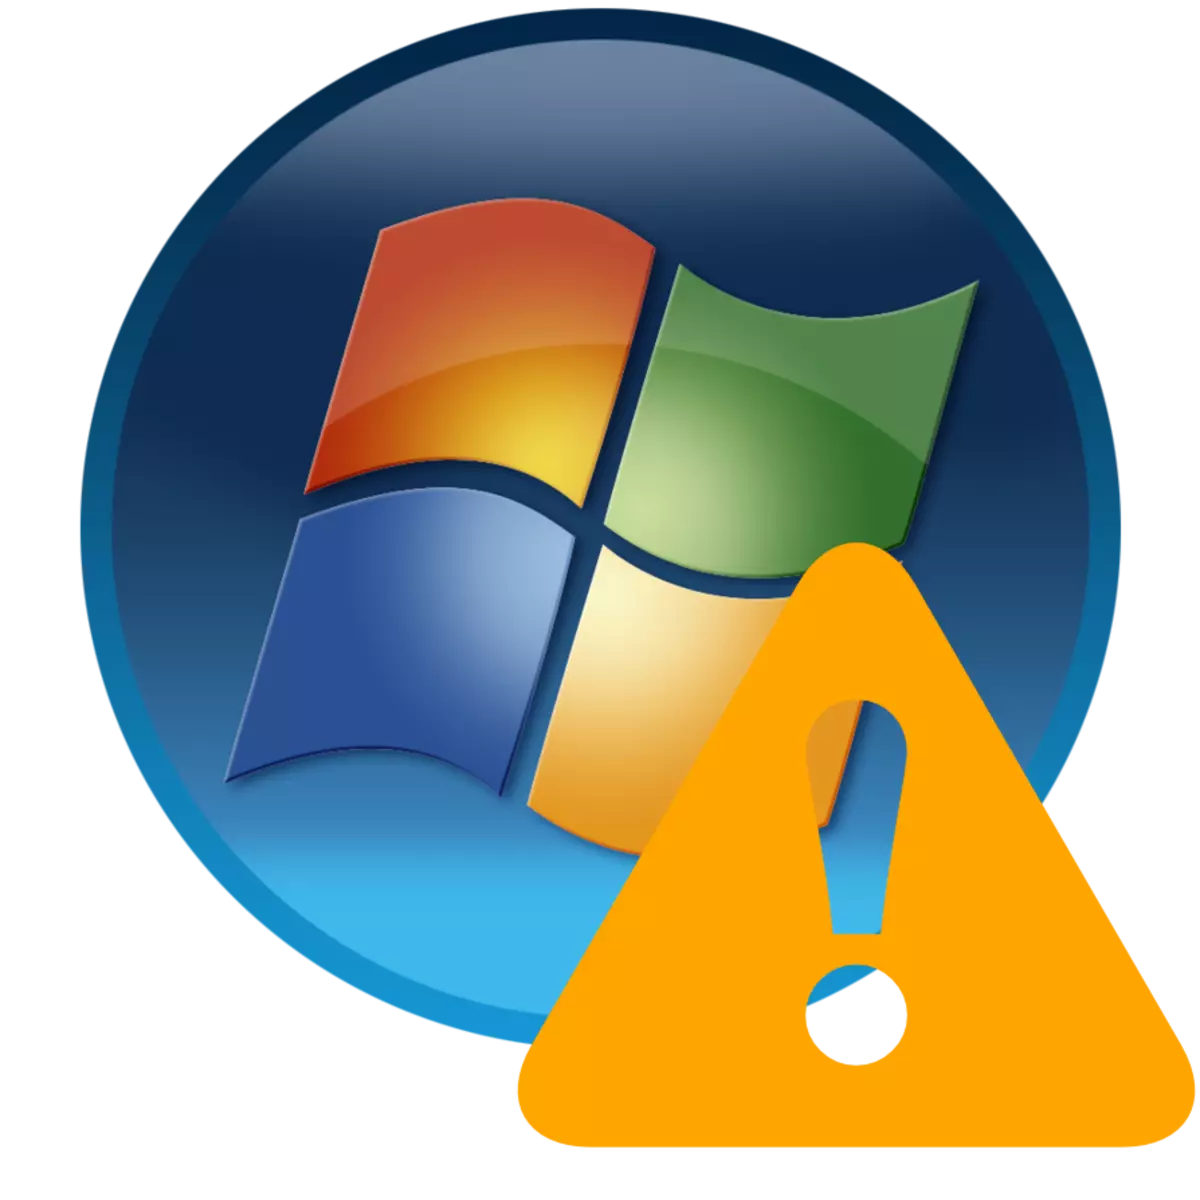 Windows 7 లో ఆపరేటింగ్ సిస్టమ్ లోపం లేదు